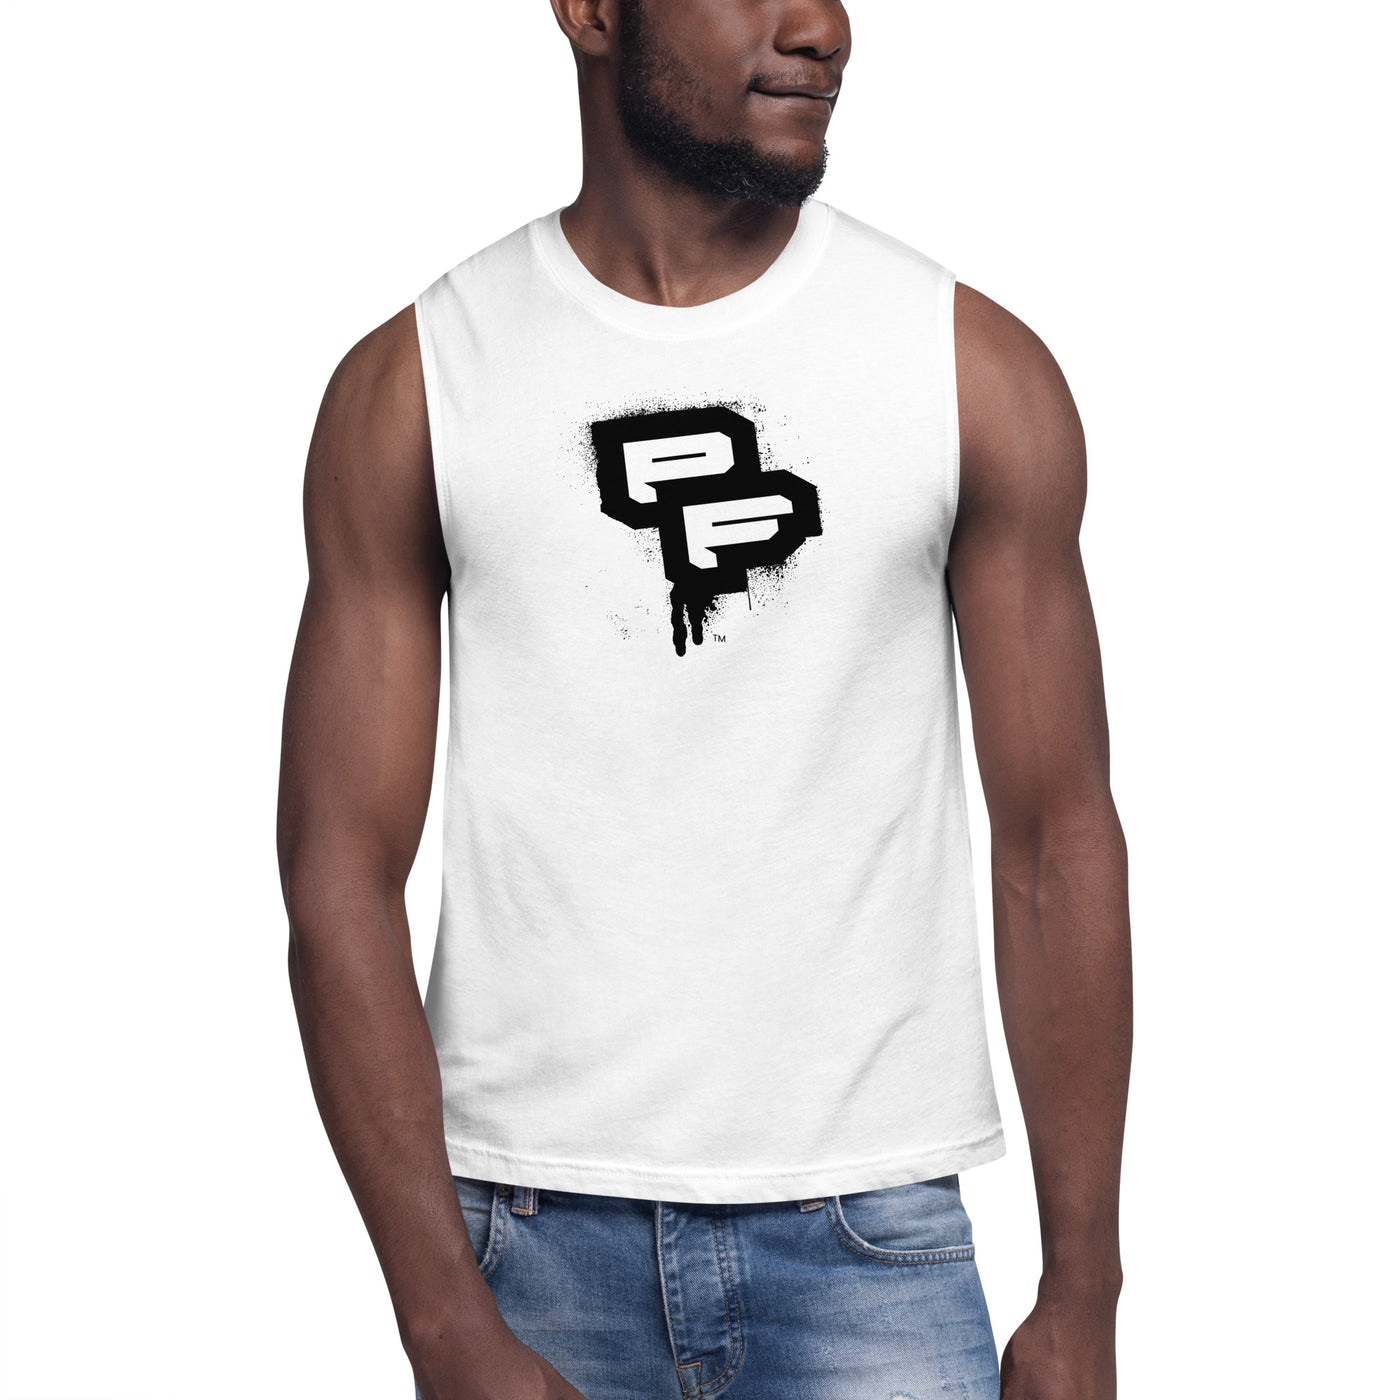 PF White Muscle Shirt